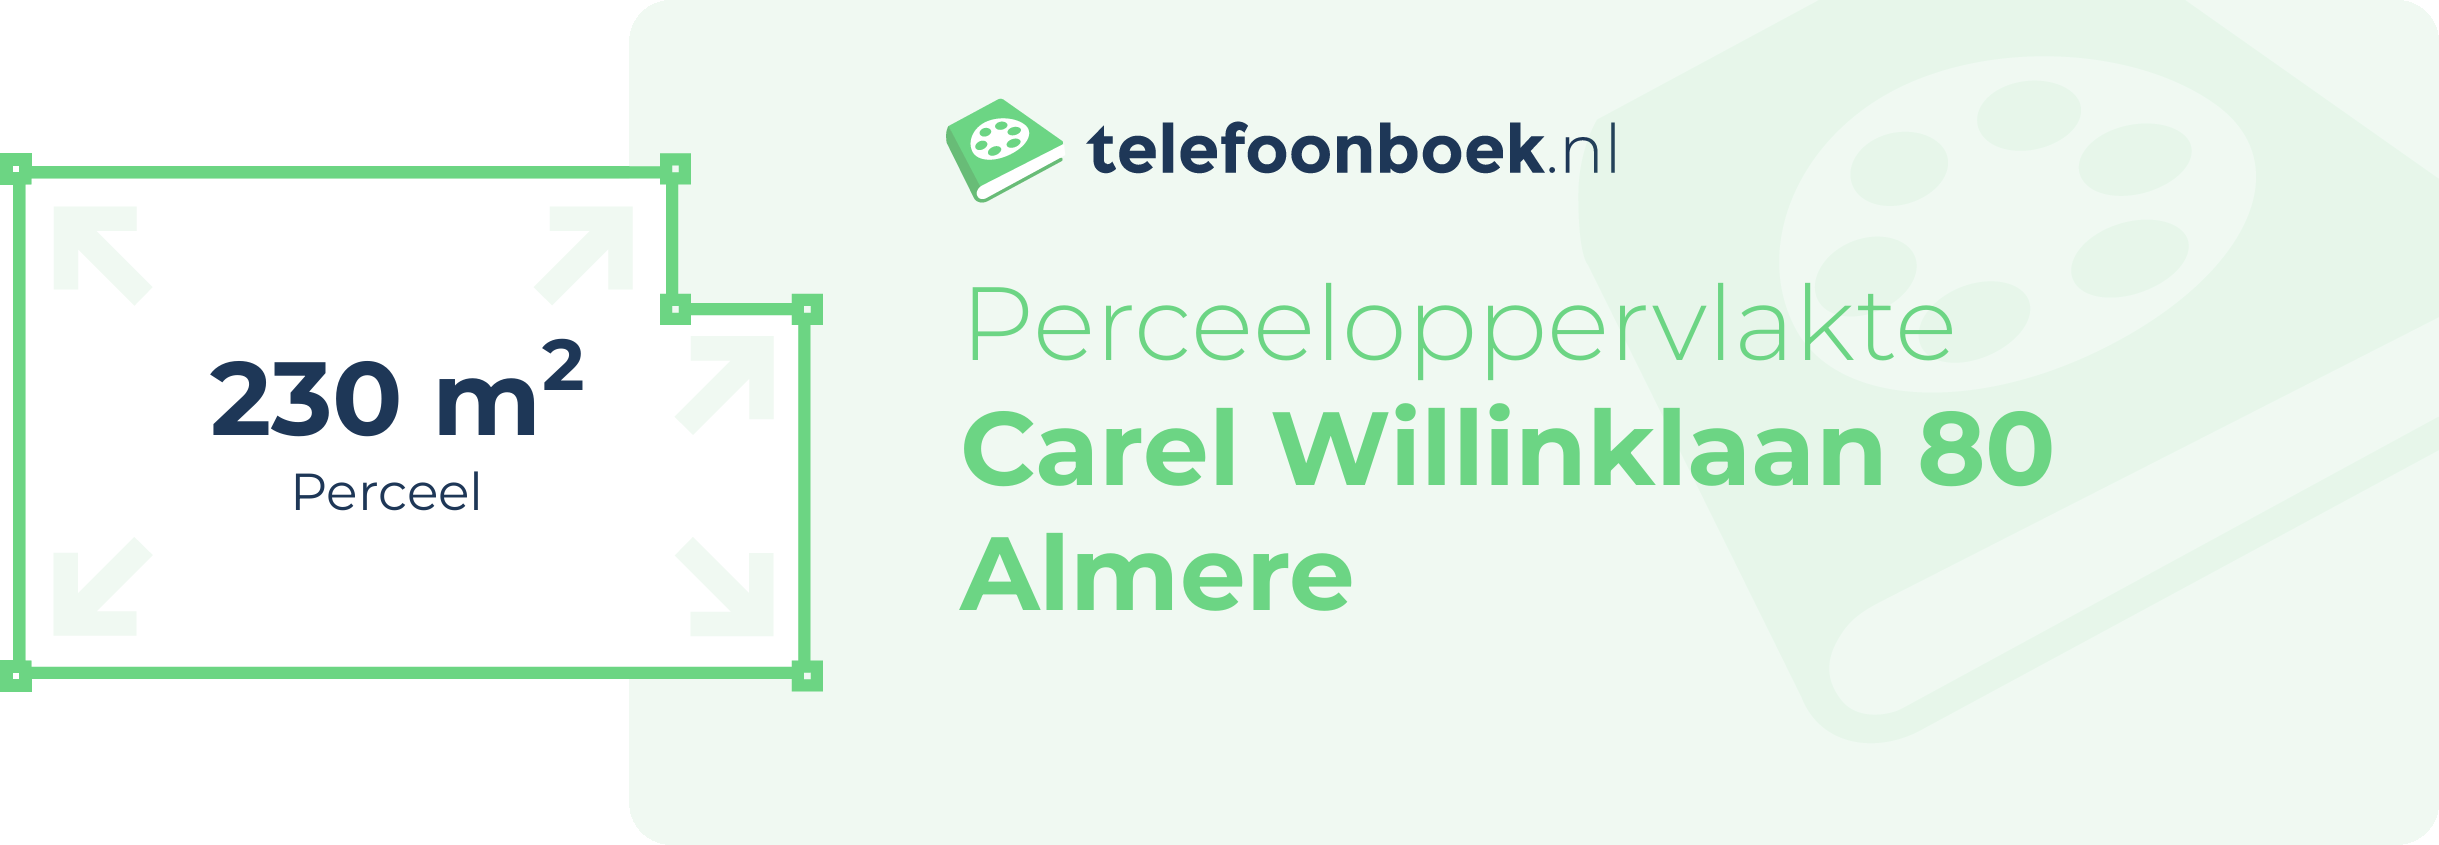 Perceeloppervlakte Carel Willinklaan 80 Almere